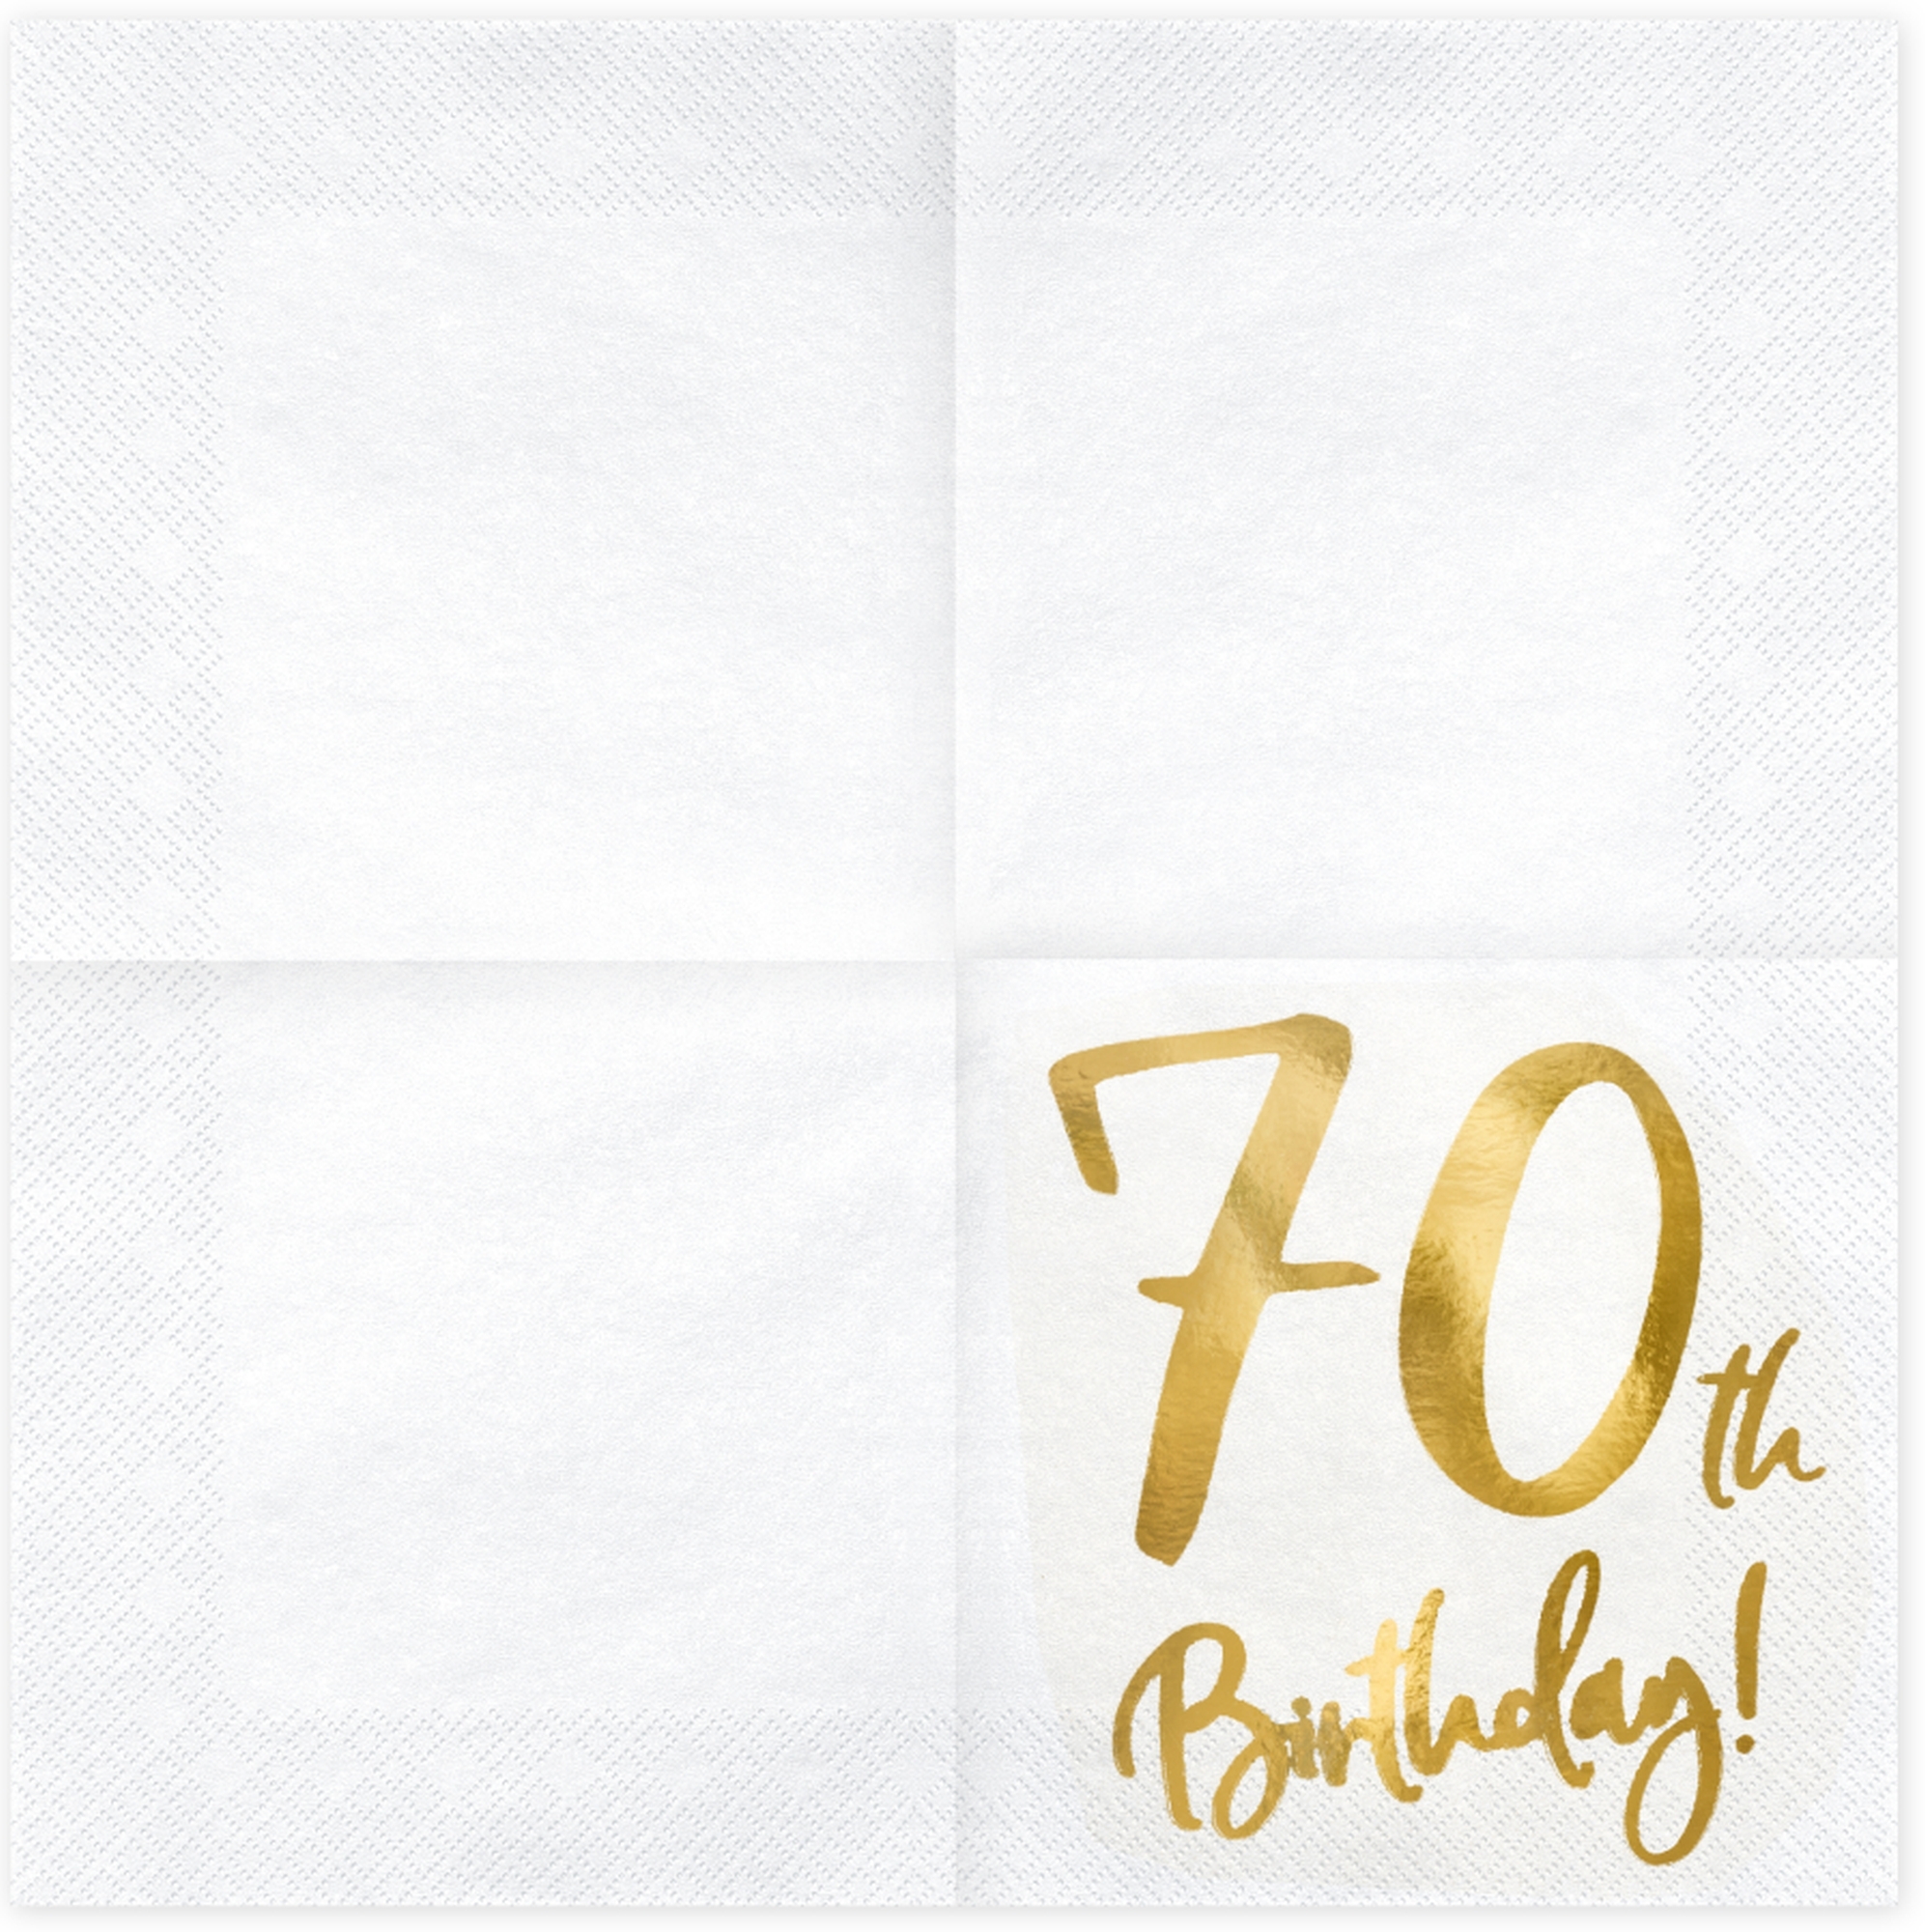 20 Servietten - 70th Birthday - Weiß / Gold